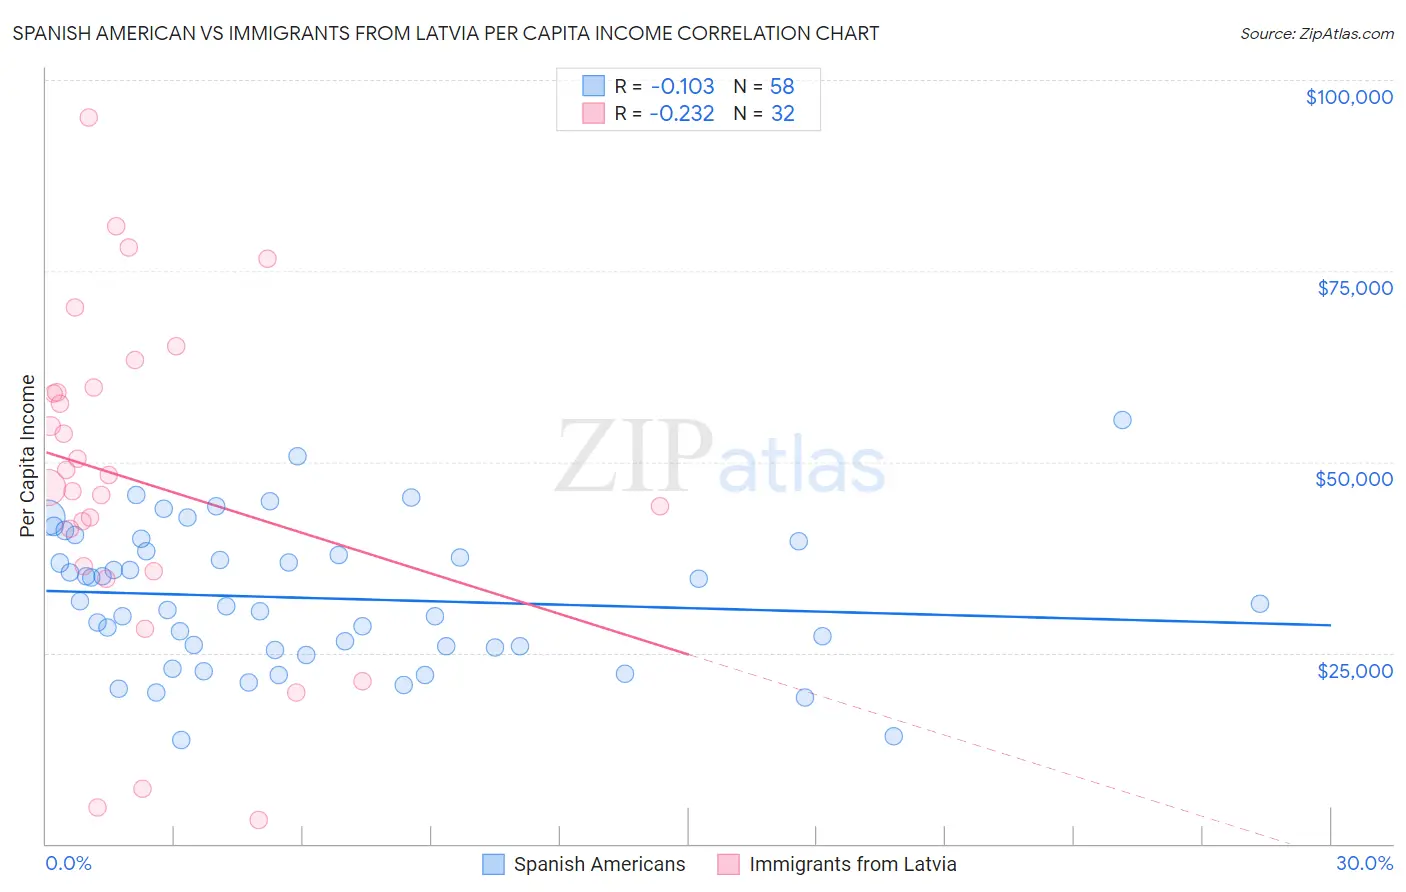 Spanish American vs Immigrants from Latvia Per Capita Income